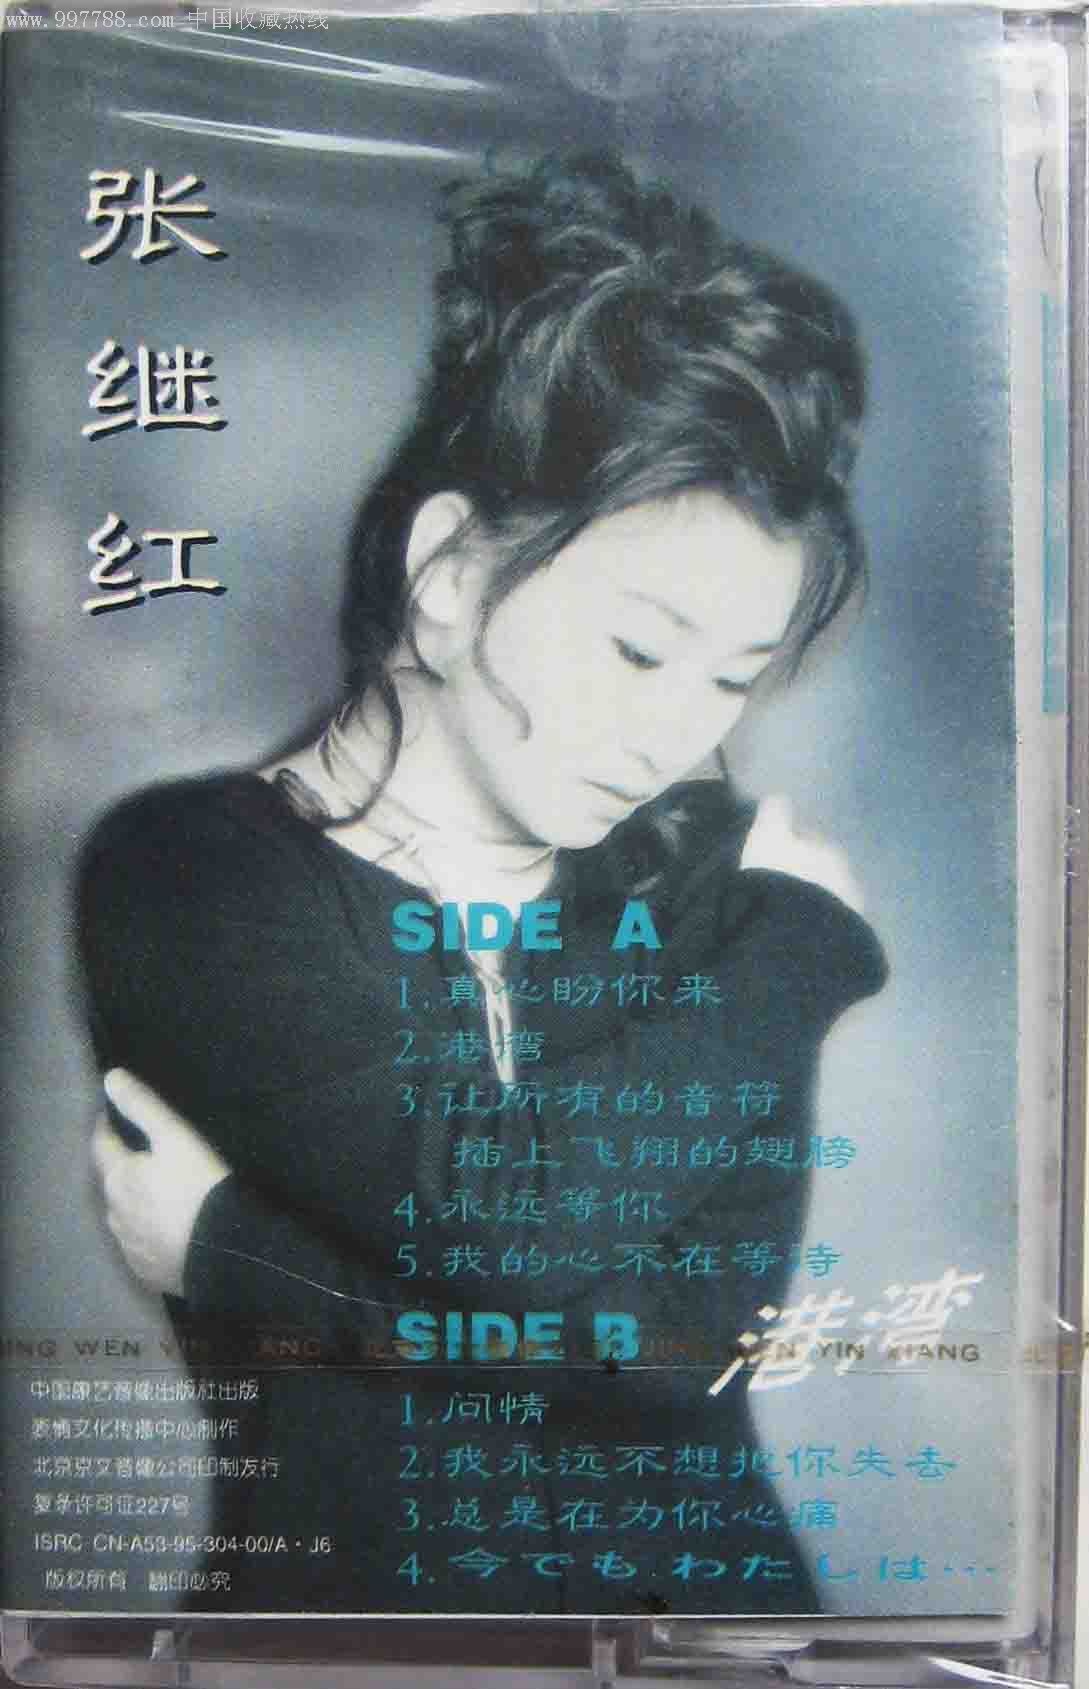 1995全新未拆:张继红专辑《真心盼你来》